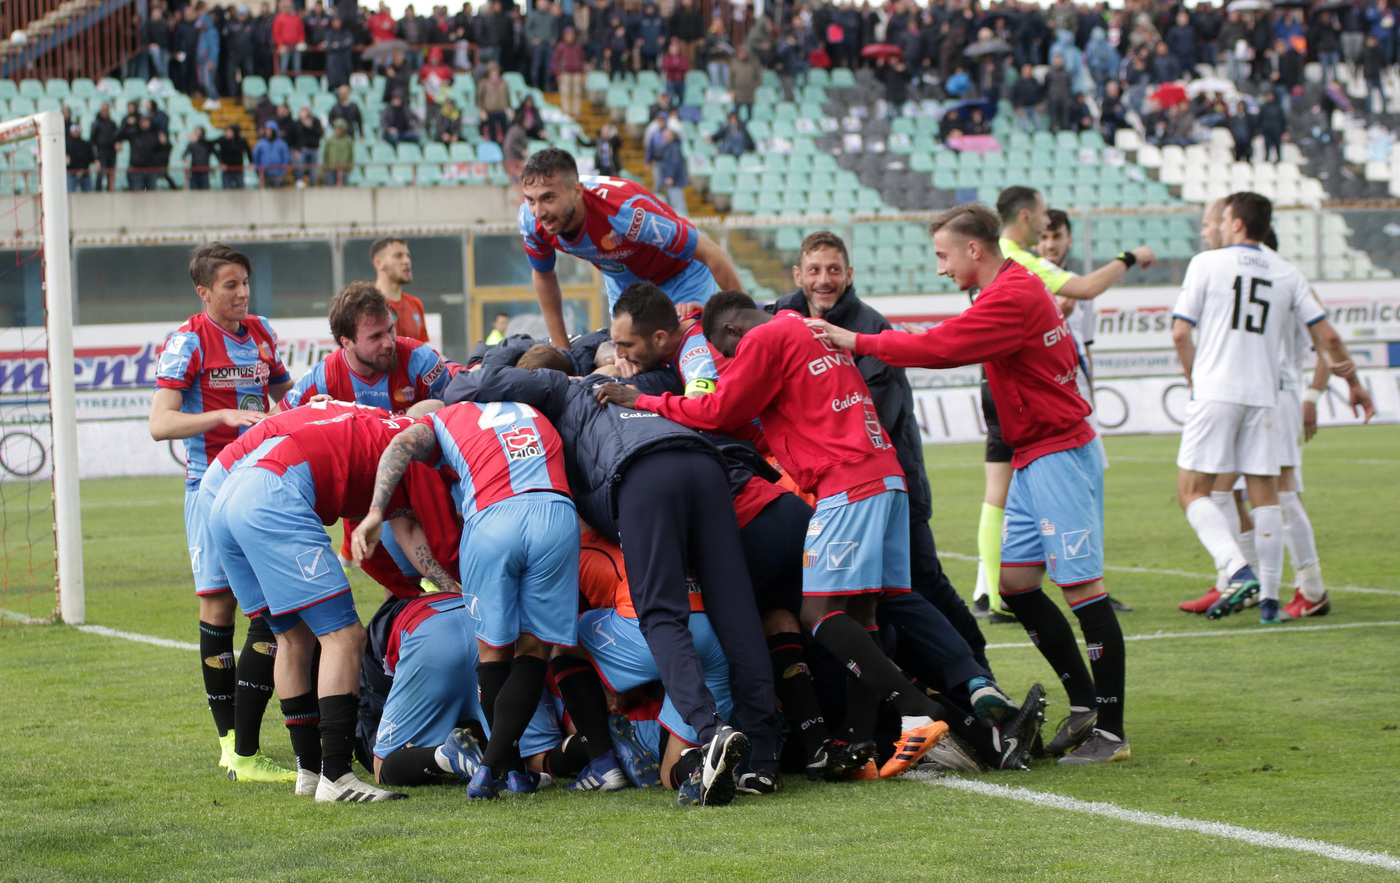 Catania-Potenza 22 maggio: si gioca la gara di ritorno del primo turno dei play-off nazionali di Serie C. Gara decisiva per la qualificazione.